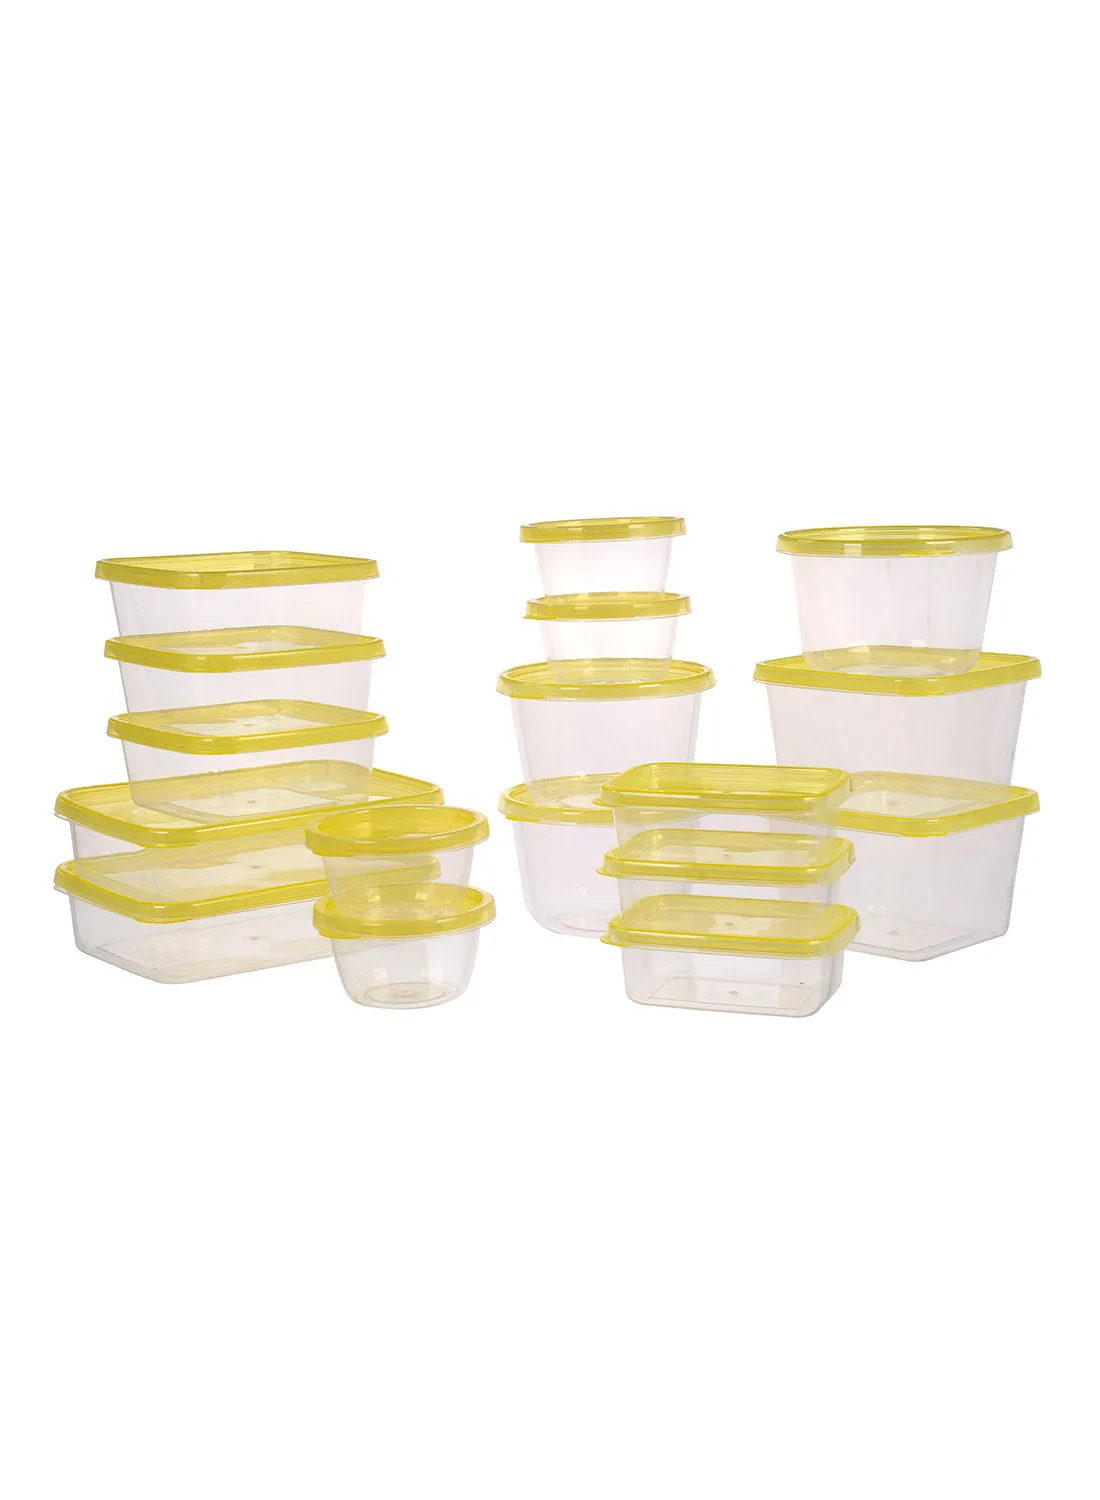 مجموعة حاويات طعام بلاستيكية 14 قطعة من أمل - أغطية مانعة للانسكاب - صندوق تخزين الطعام - صناديق تخزين - منظمات خزانة المطبخ - أصفر